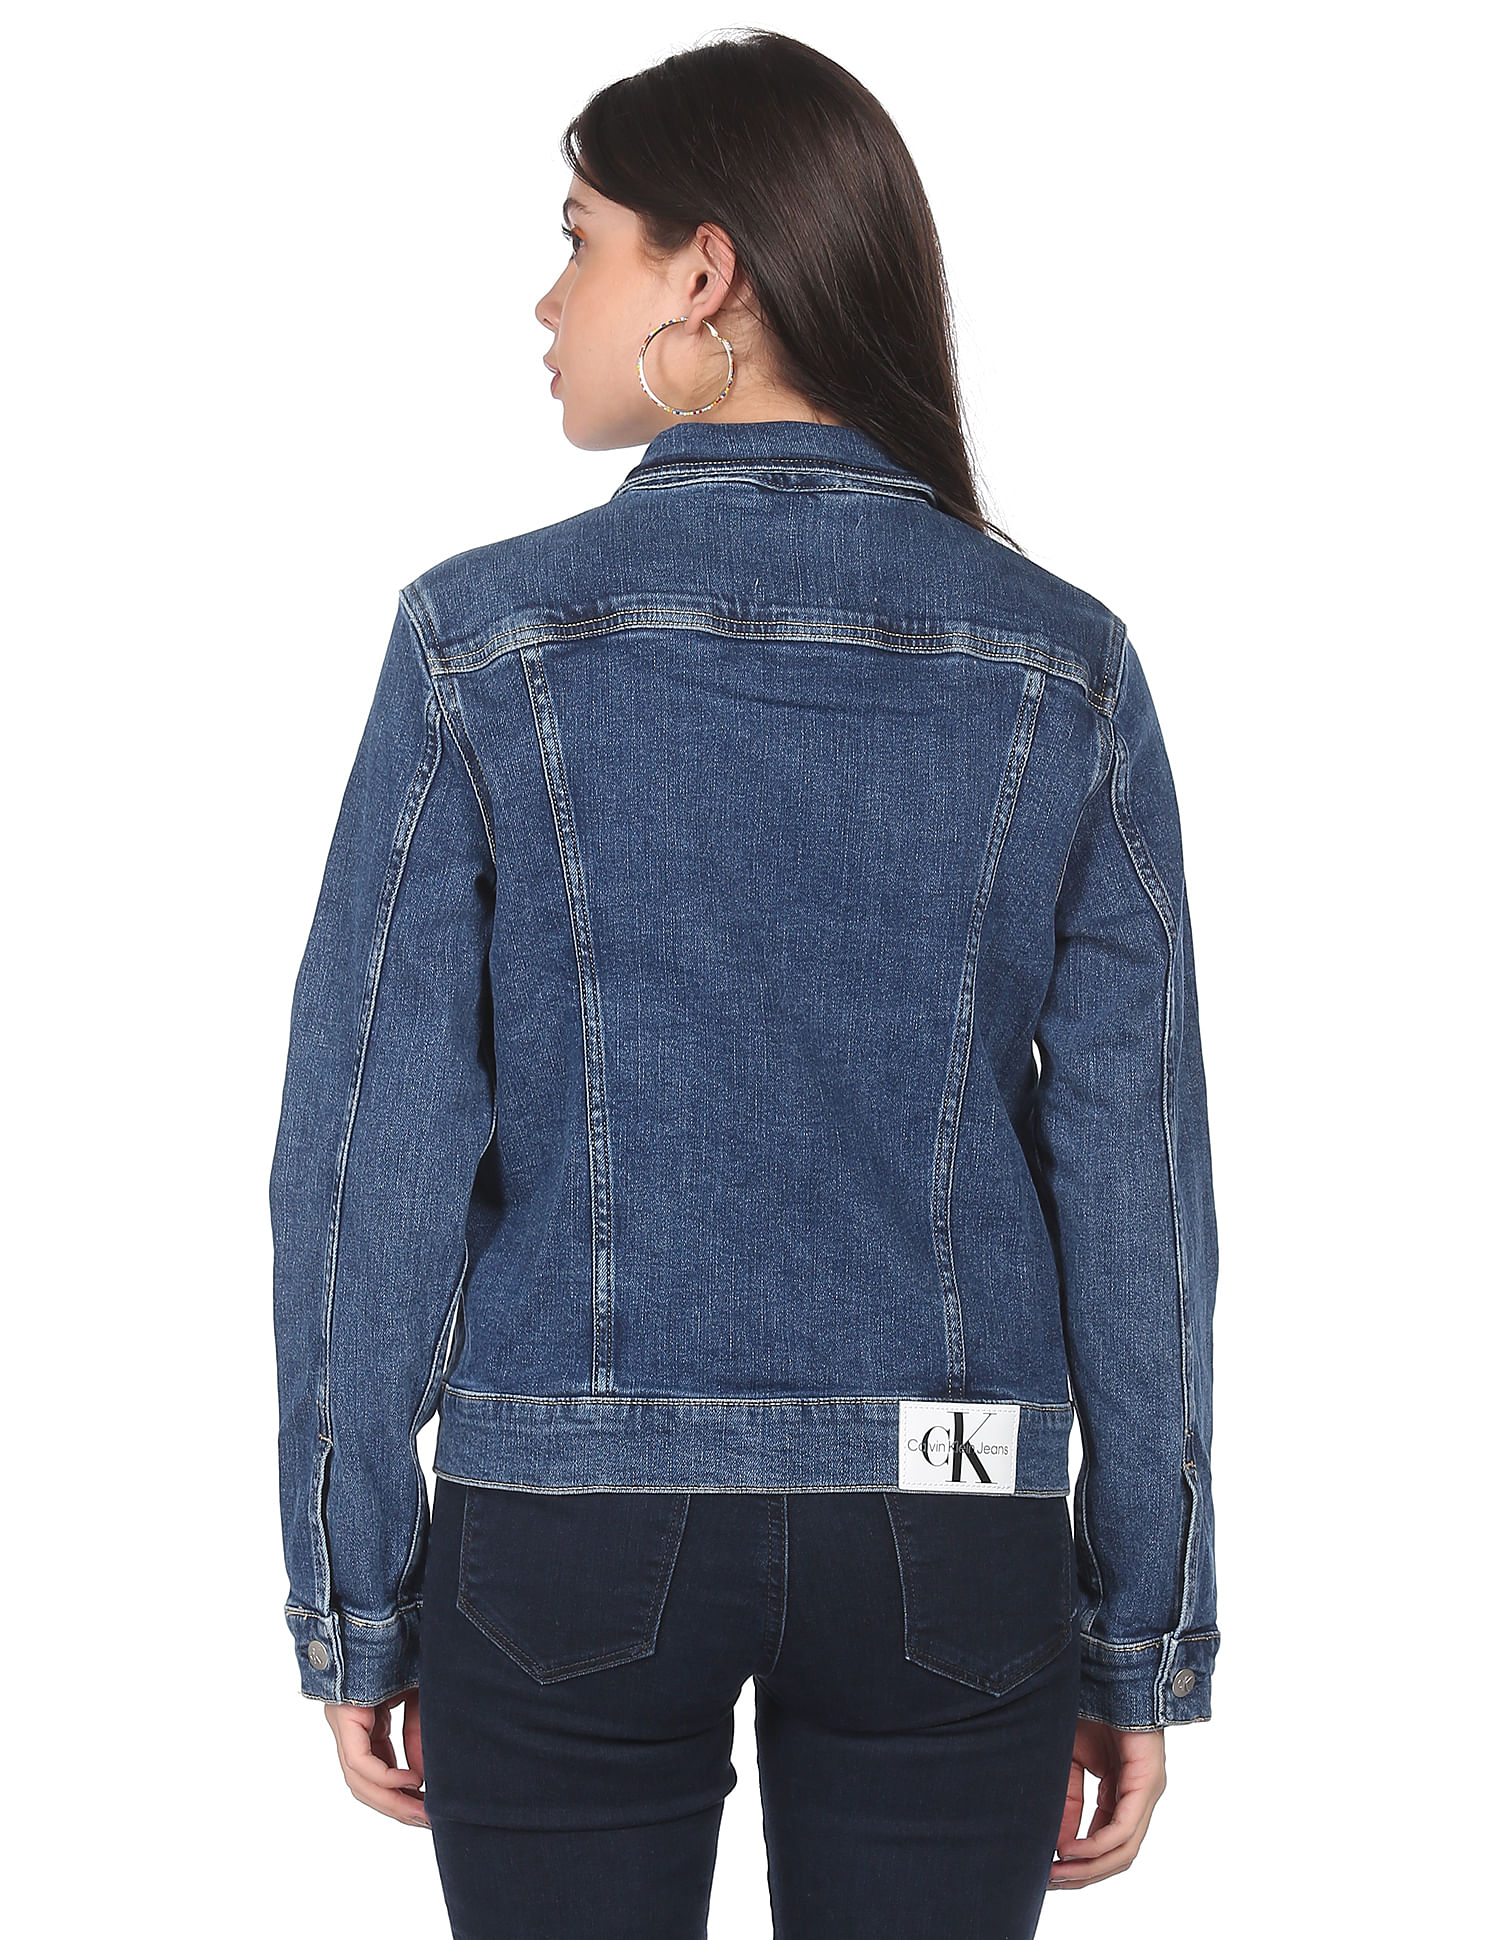 Calvin Klein Girls Jacket Super Soft Stretch Denim, 4 Pockets & Button  Closure, Authentic, Large (12/14) : Amazon.in: Fashion